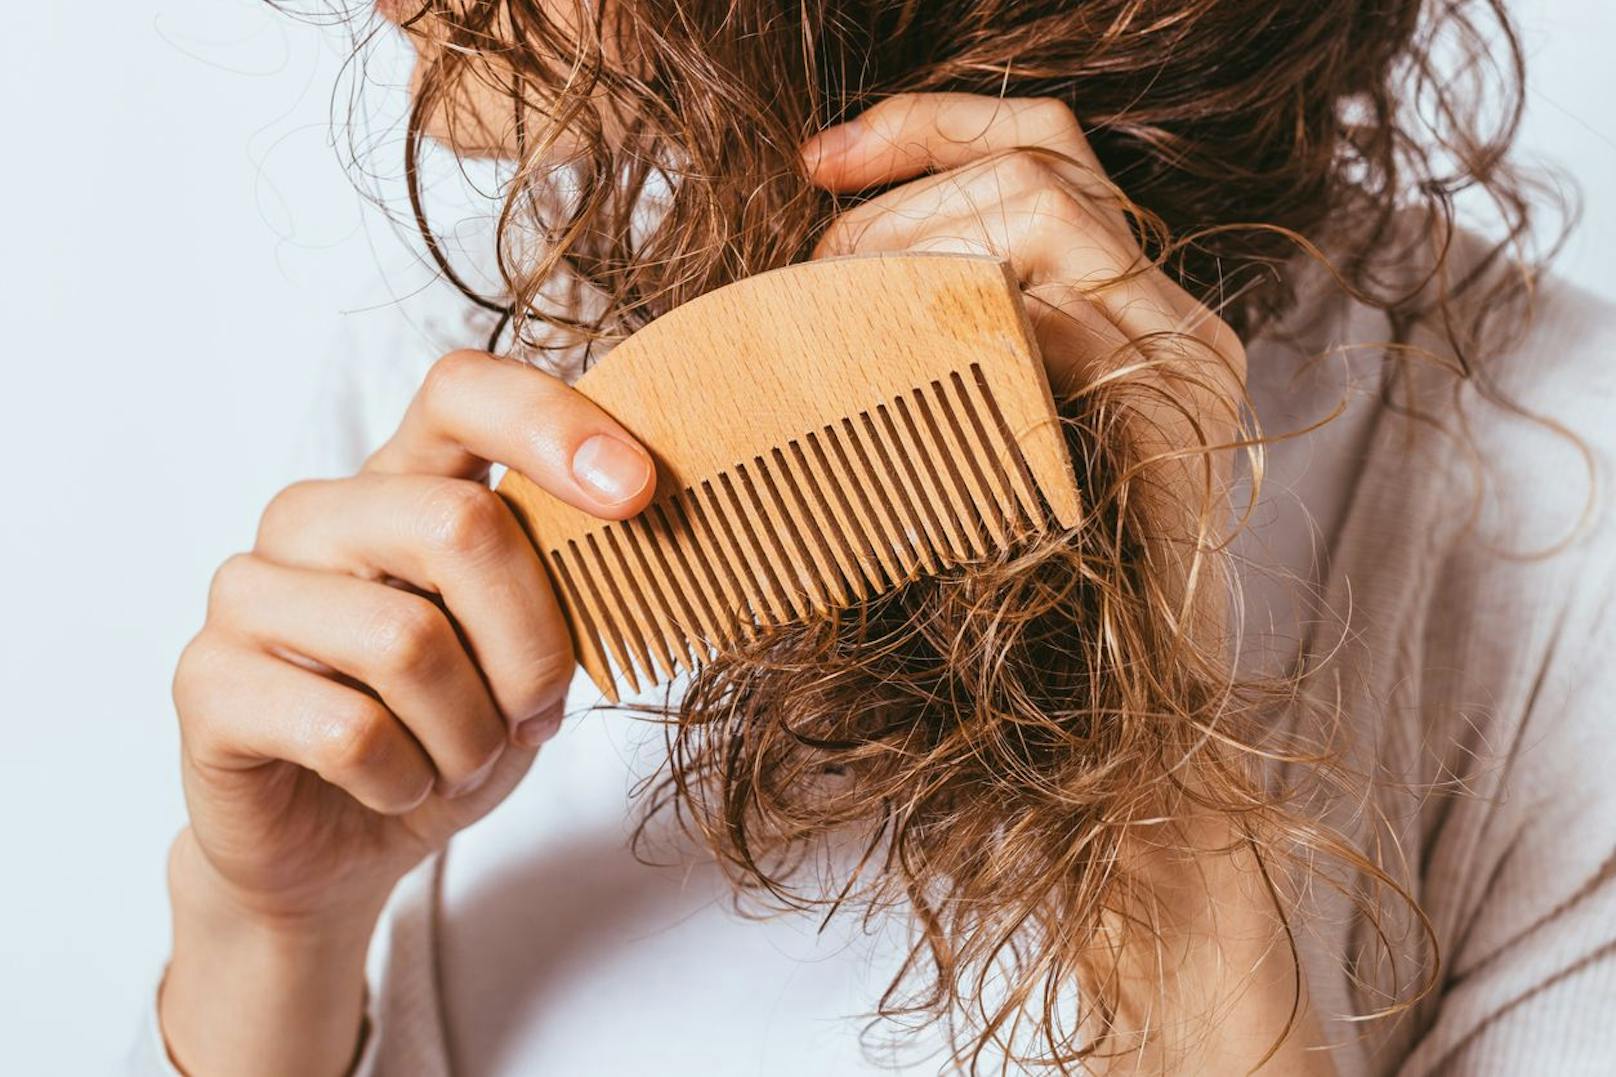 Frizz ist reine Physik. Wenn du Produkte wie Metall- oder Kunststoffborsten verwendest um deine Haare zu durchkämmen werden sie nur statisch aufgeladen und neigen dazu herabzustehen. Investiere lieber in Naturbürsten.